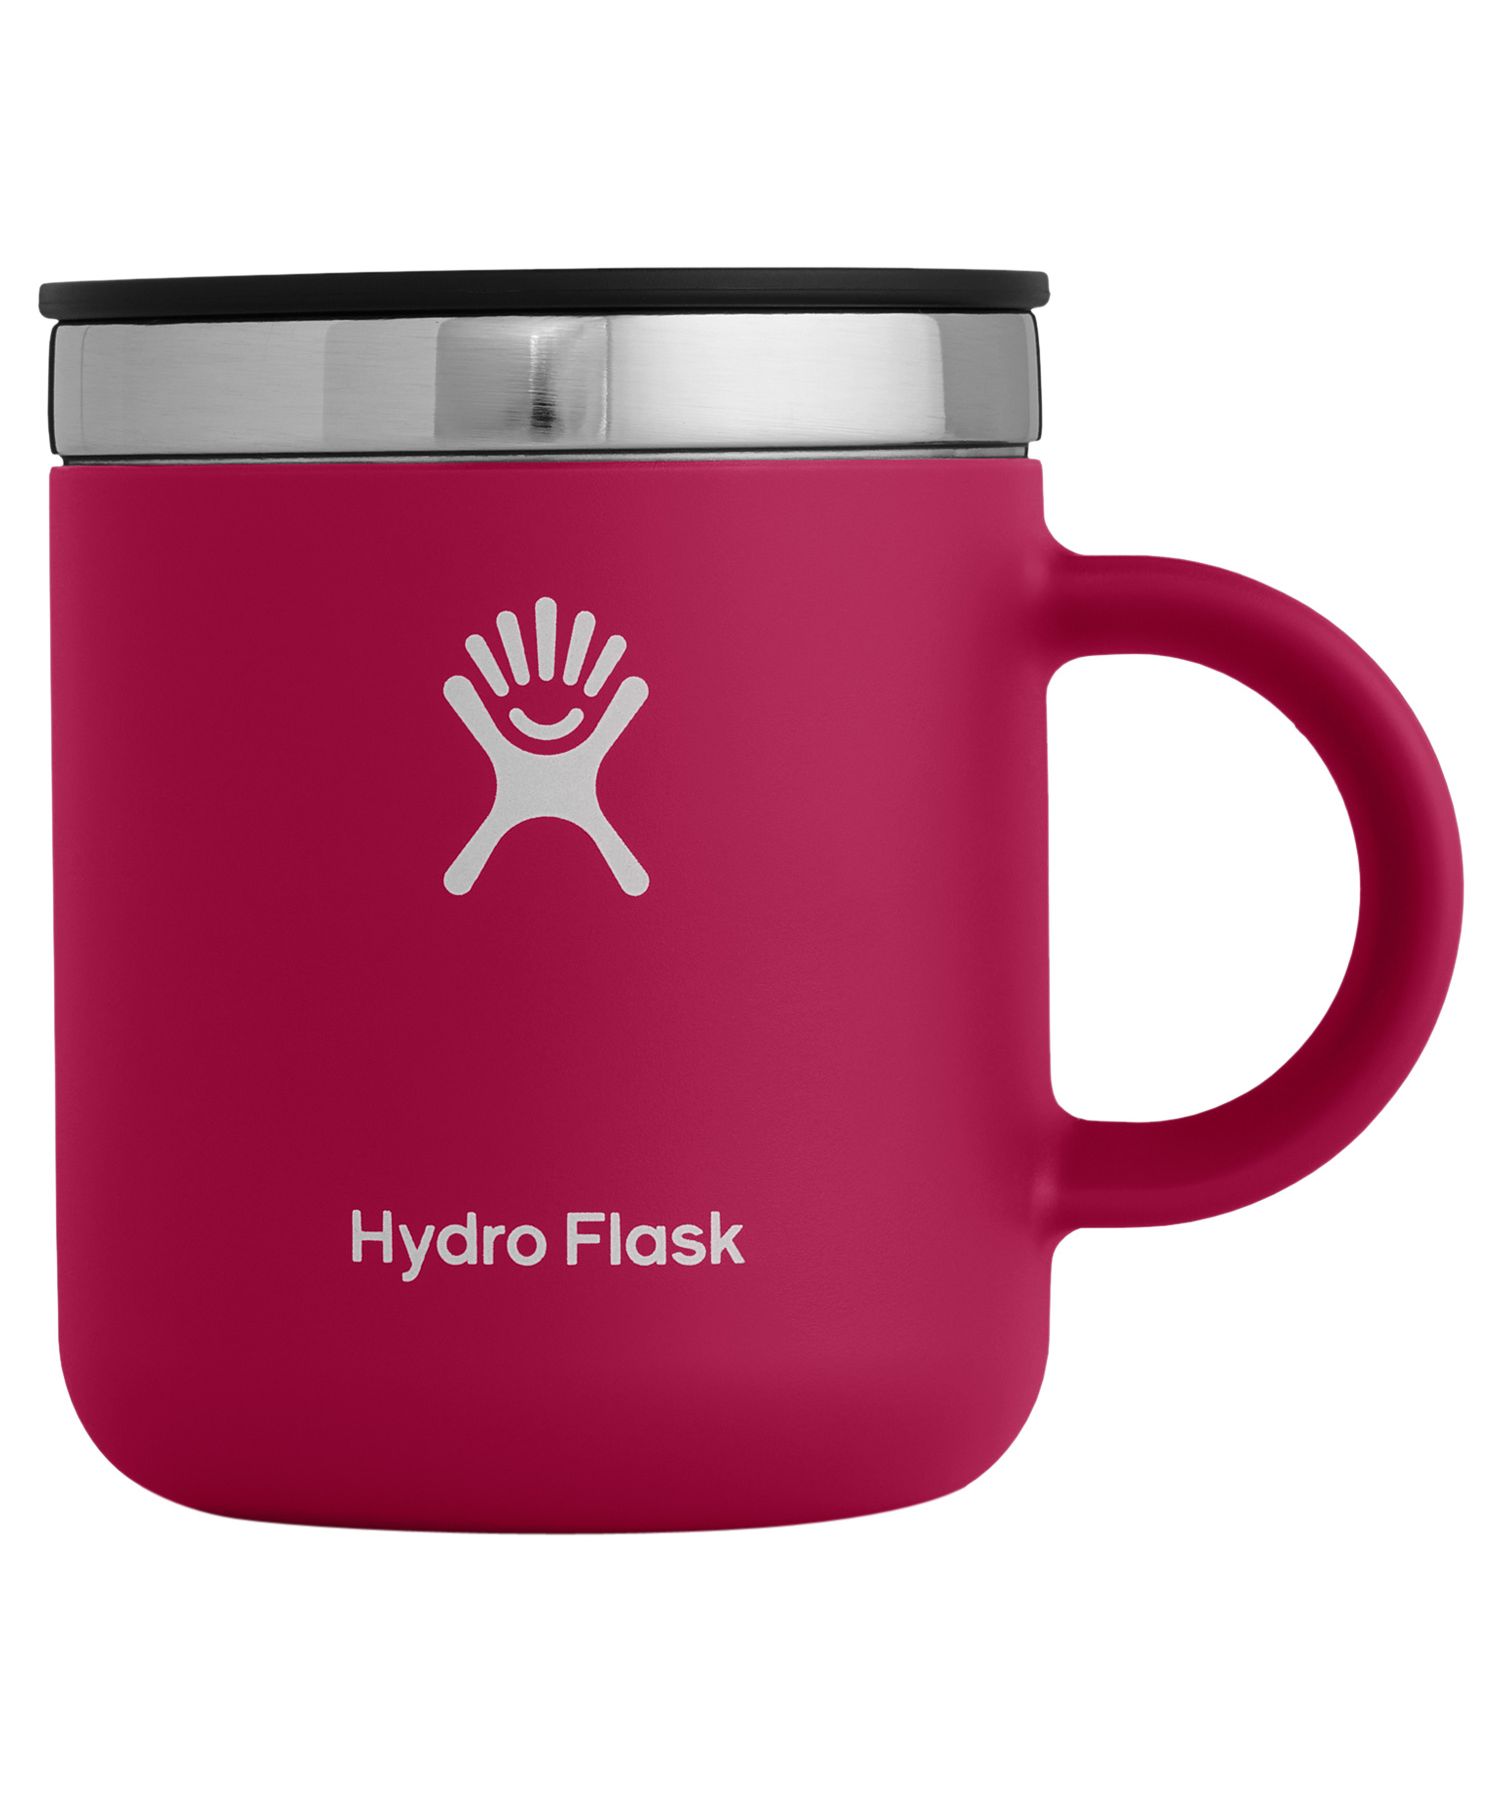 ハイドロフラスク Hydro Flask 6oz コーヒーマグ マグカップ コーヒー 